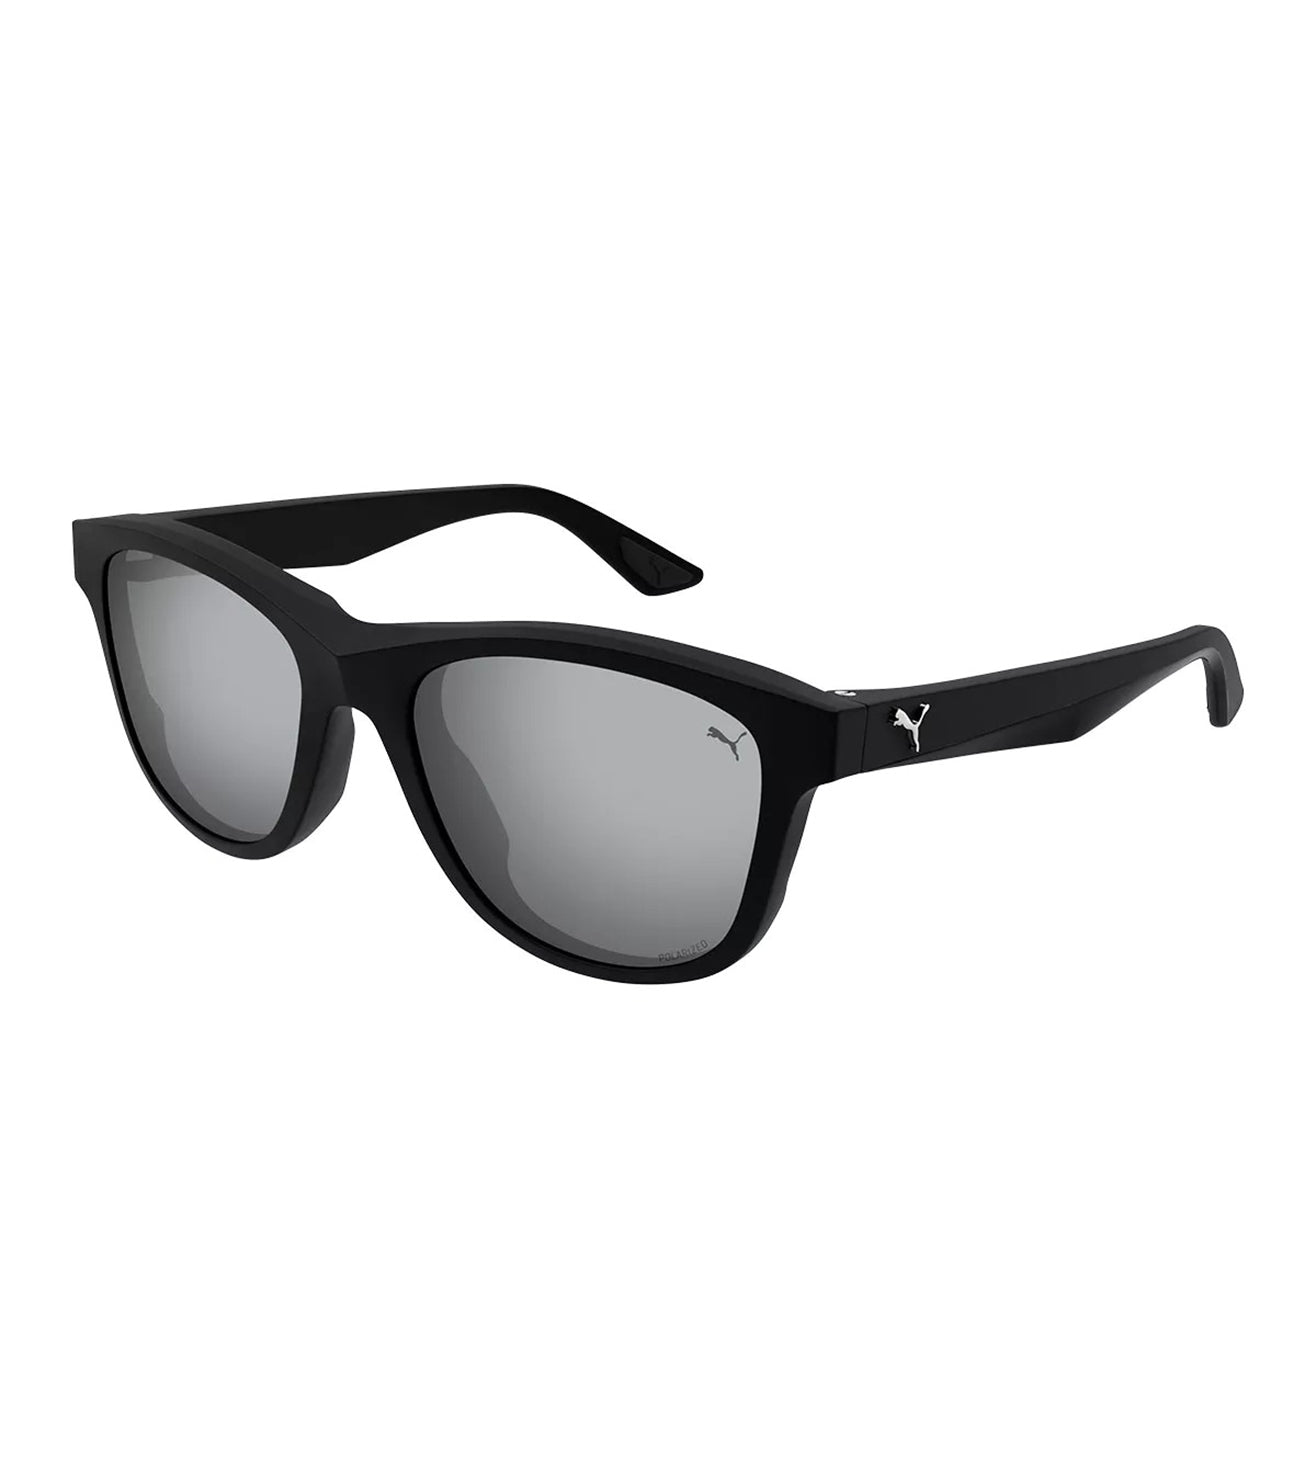 Puma Unisex Silver Square Sunglasses